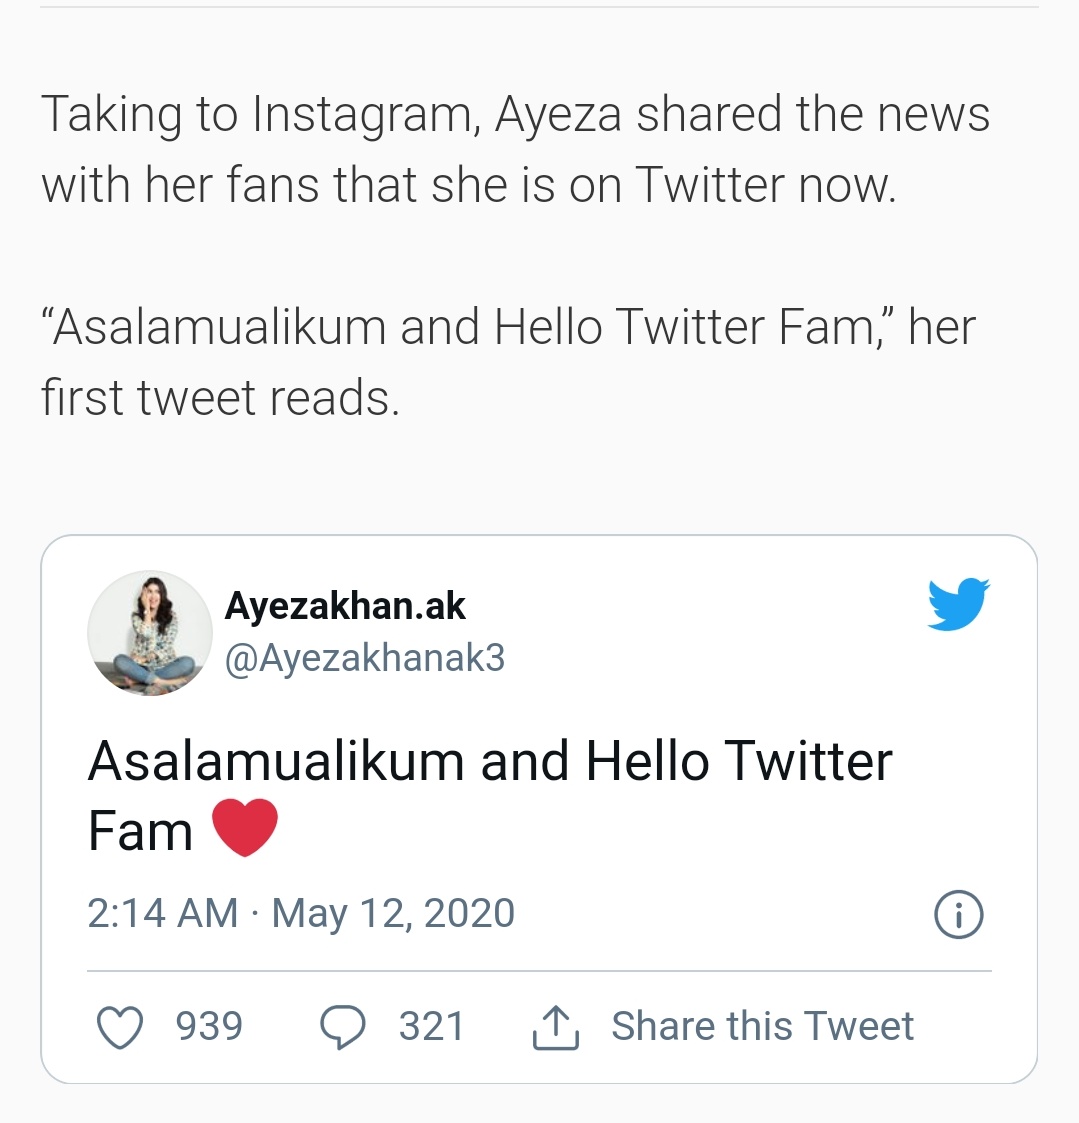  https://arynews.tv/en/ayeza-khan-joins-twitter/  #ayezakhan  #ChupkeChupke